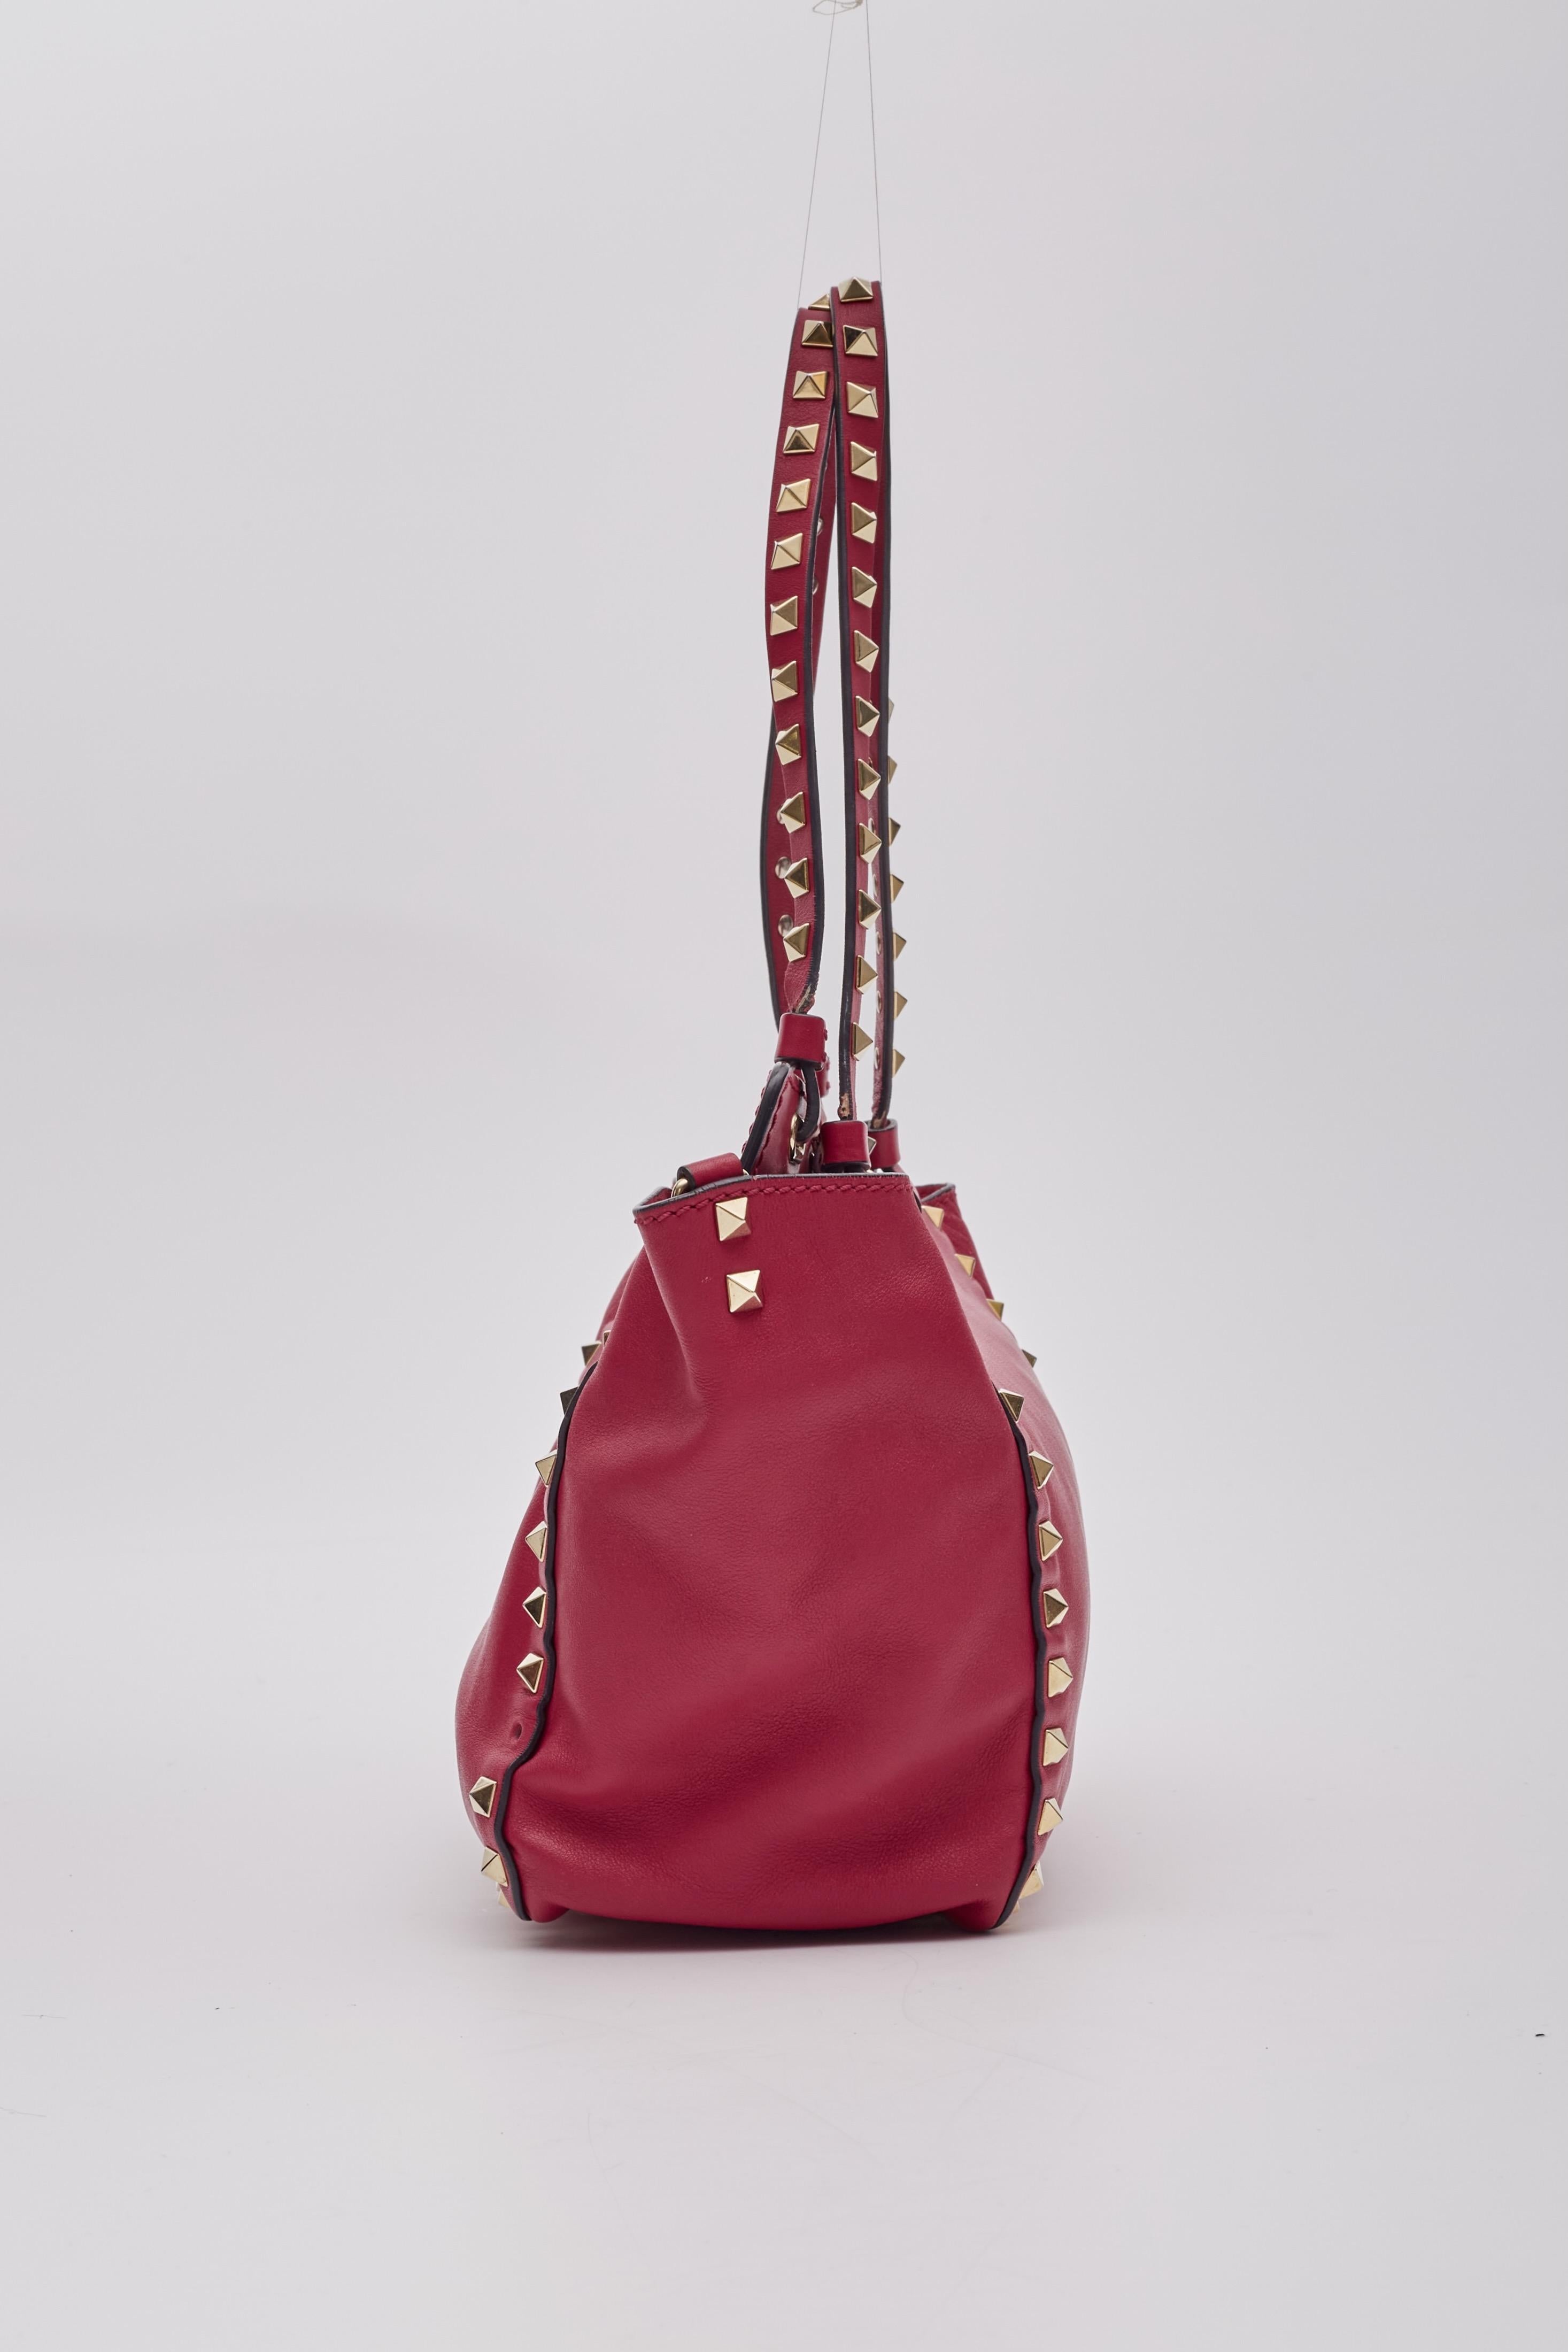 Women's Valentino Garavani Red Leather Rockstud Shoulder Bag